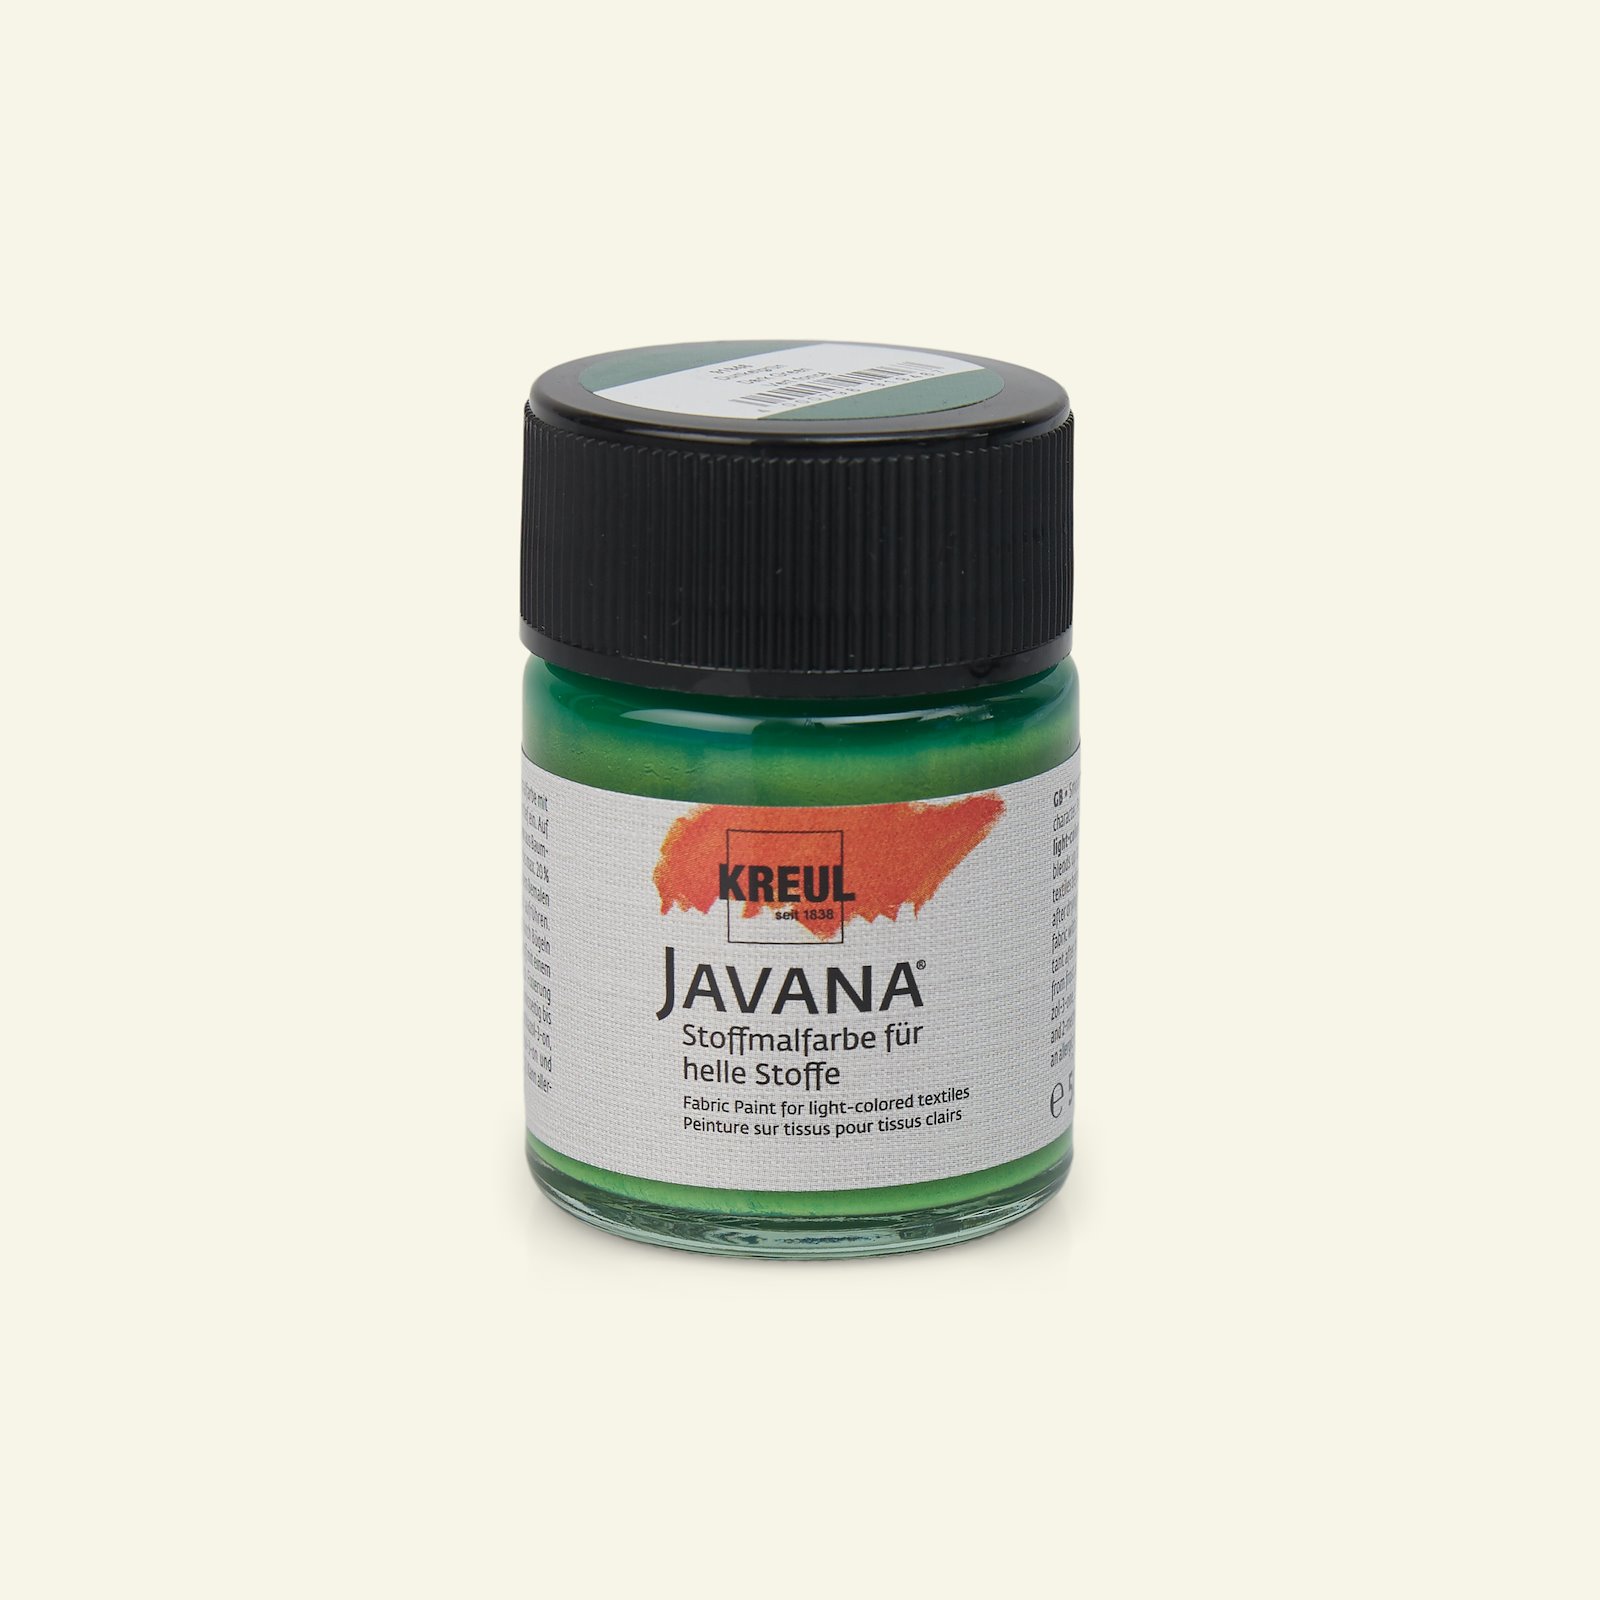 Javana fabric paint dark green50ml 29616_pack_b